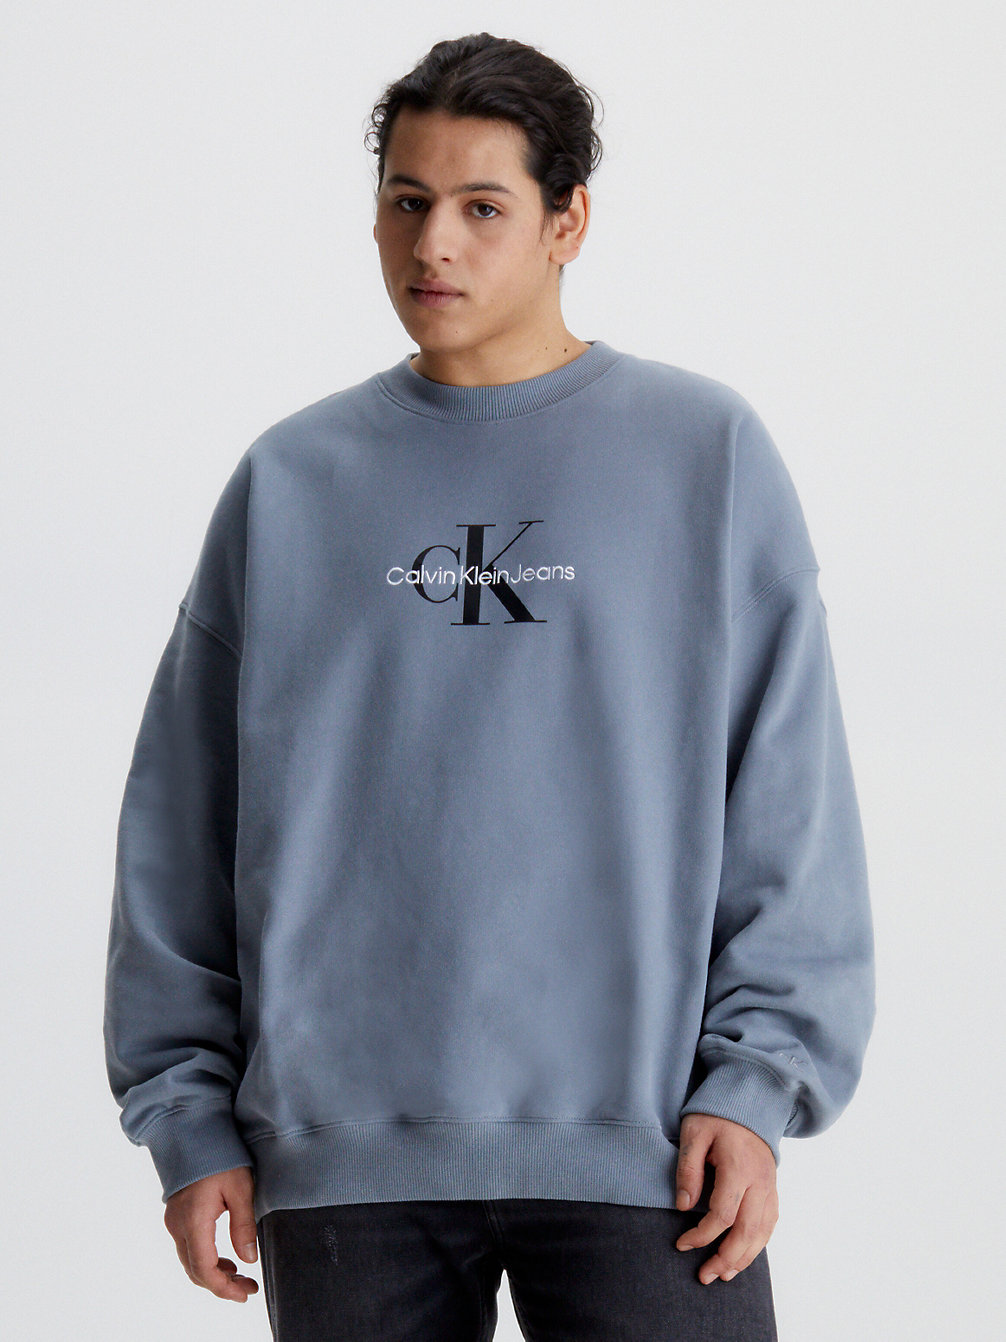 OVERCAST GREY > Grote Maat Monogram Sweatshirt > undefined heren - Calvin Klein